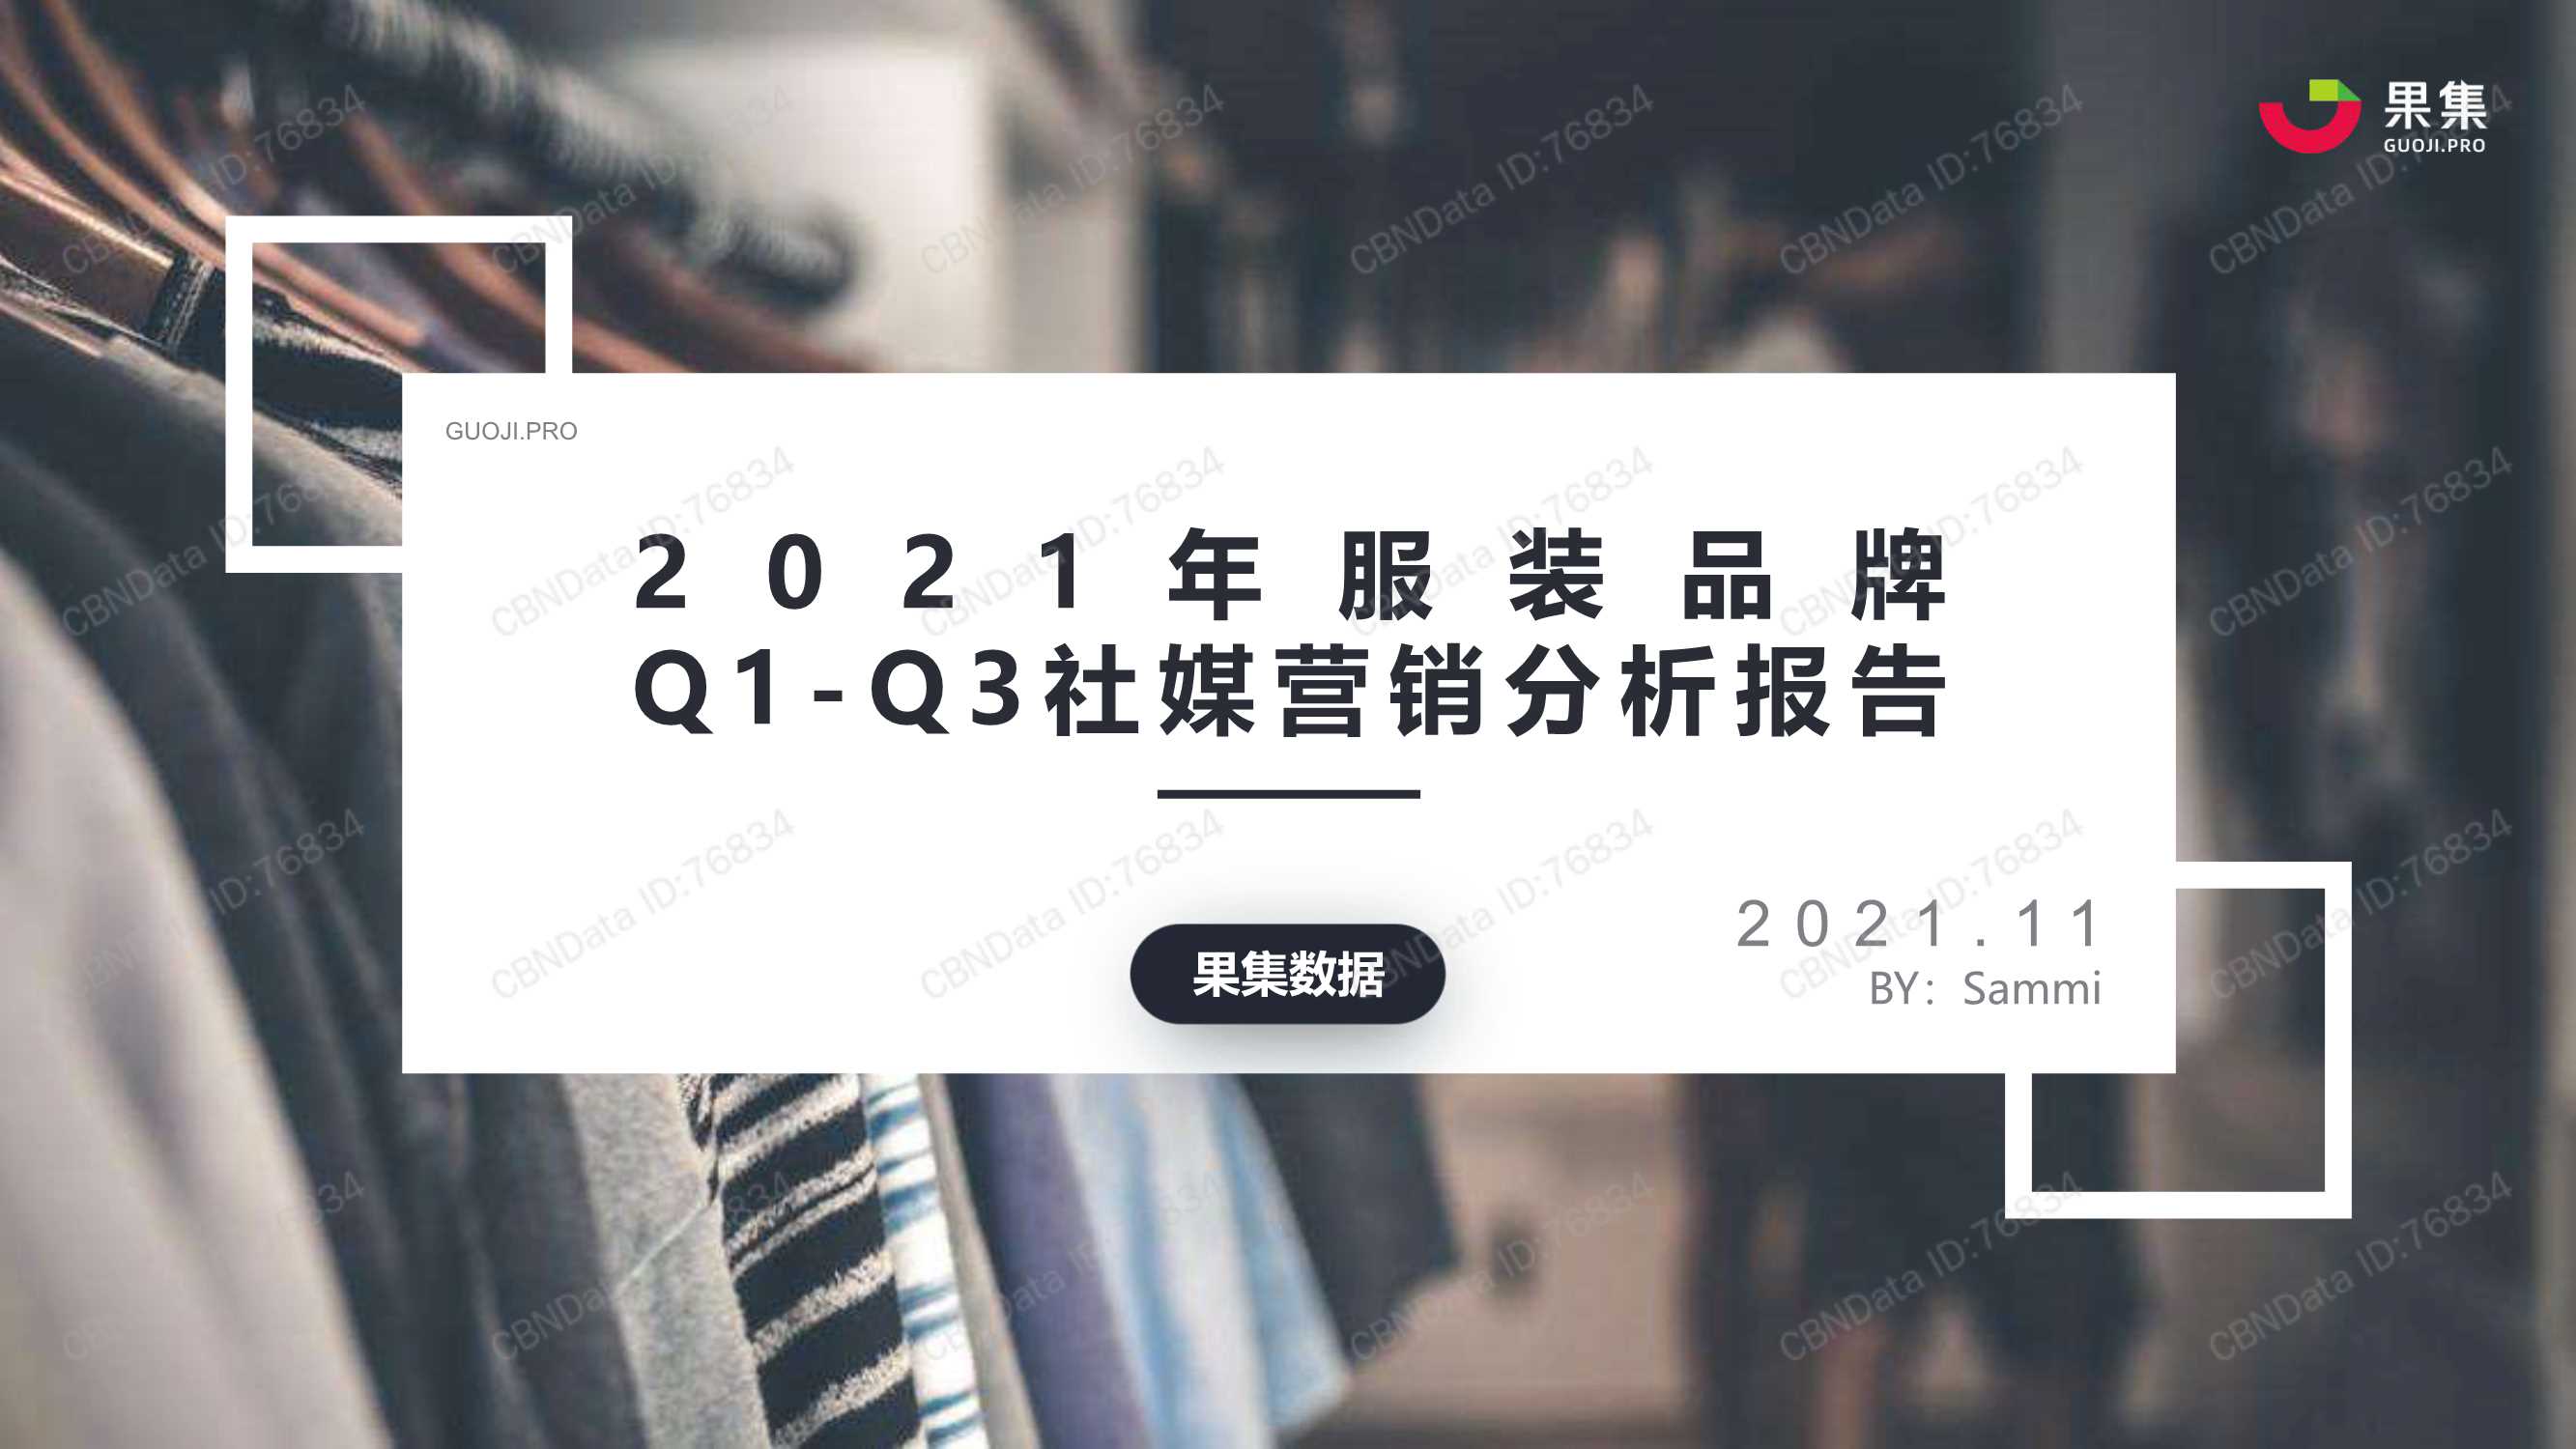 果集-2021年服装品牌Q1-Q3社媒营销分析报告-2021.11-32页